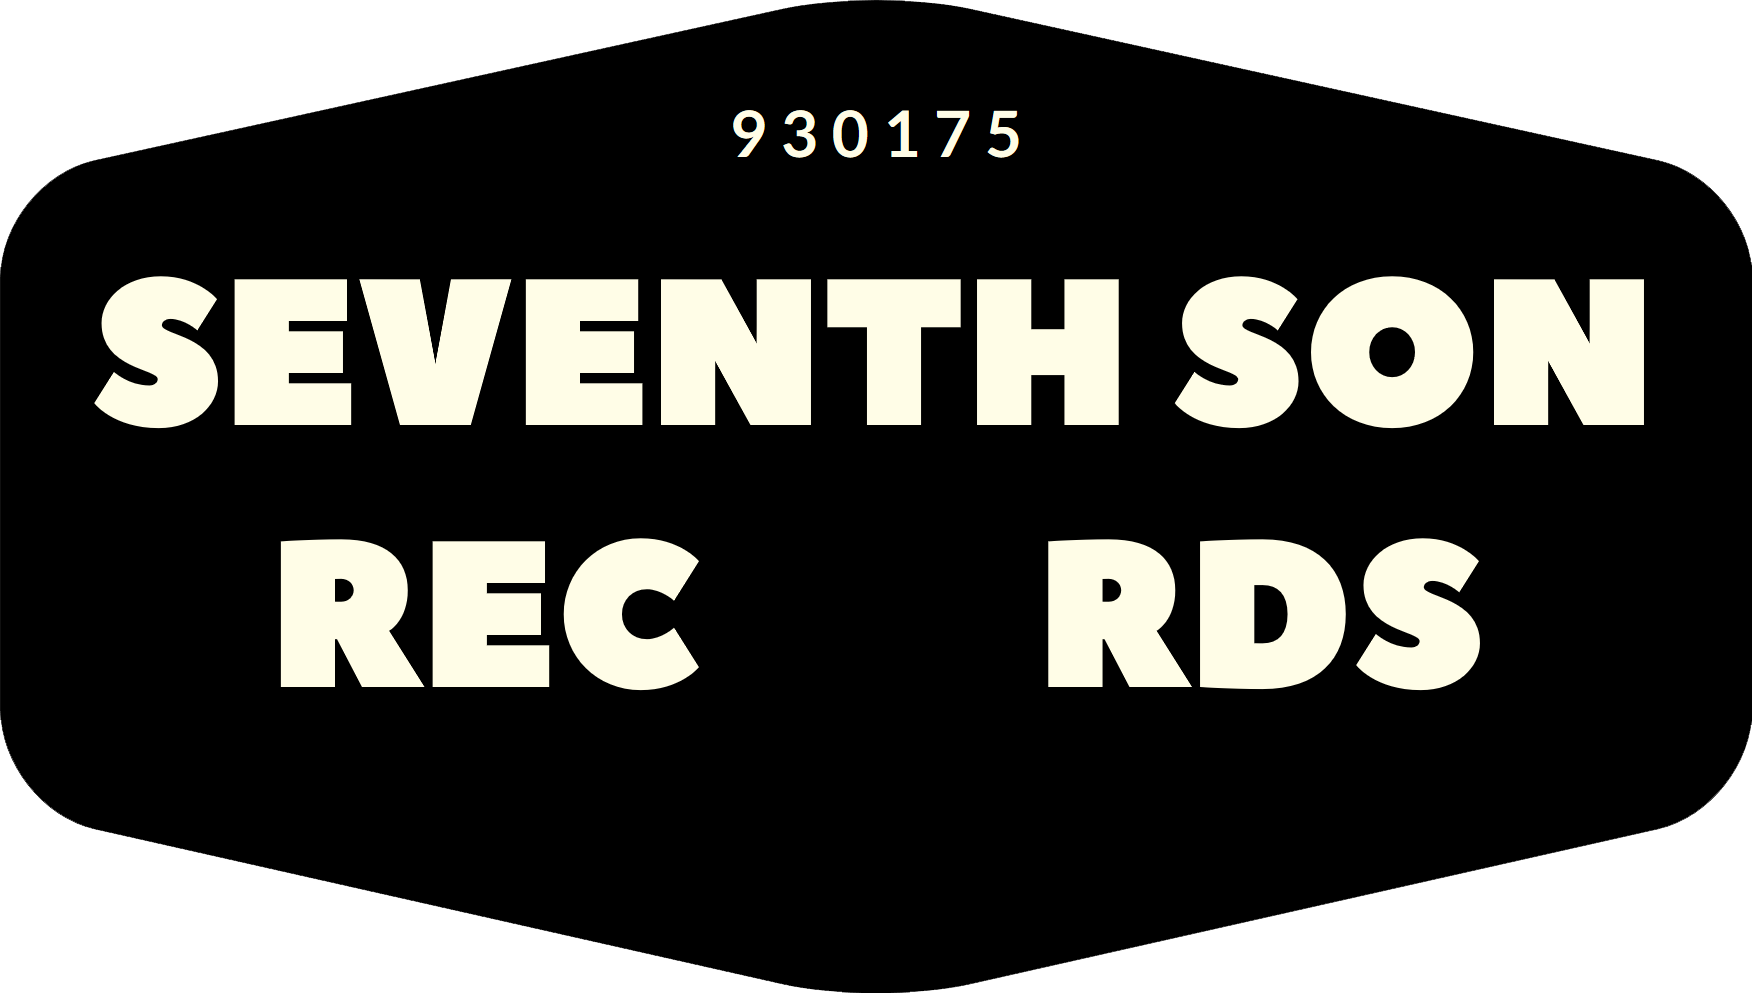 Seventh Son Records